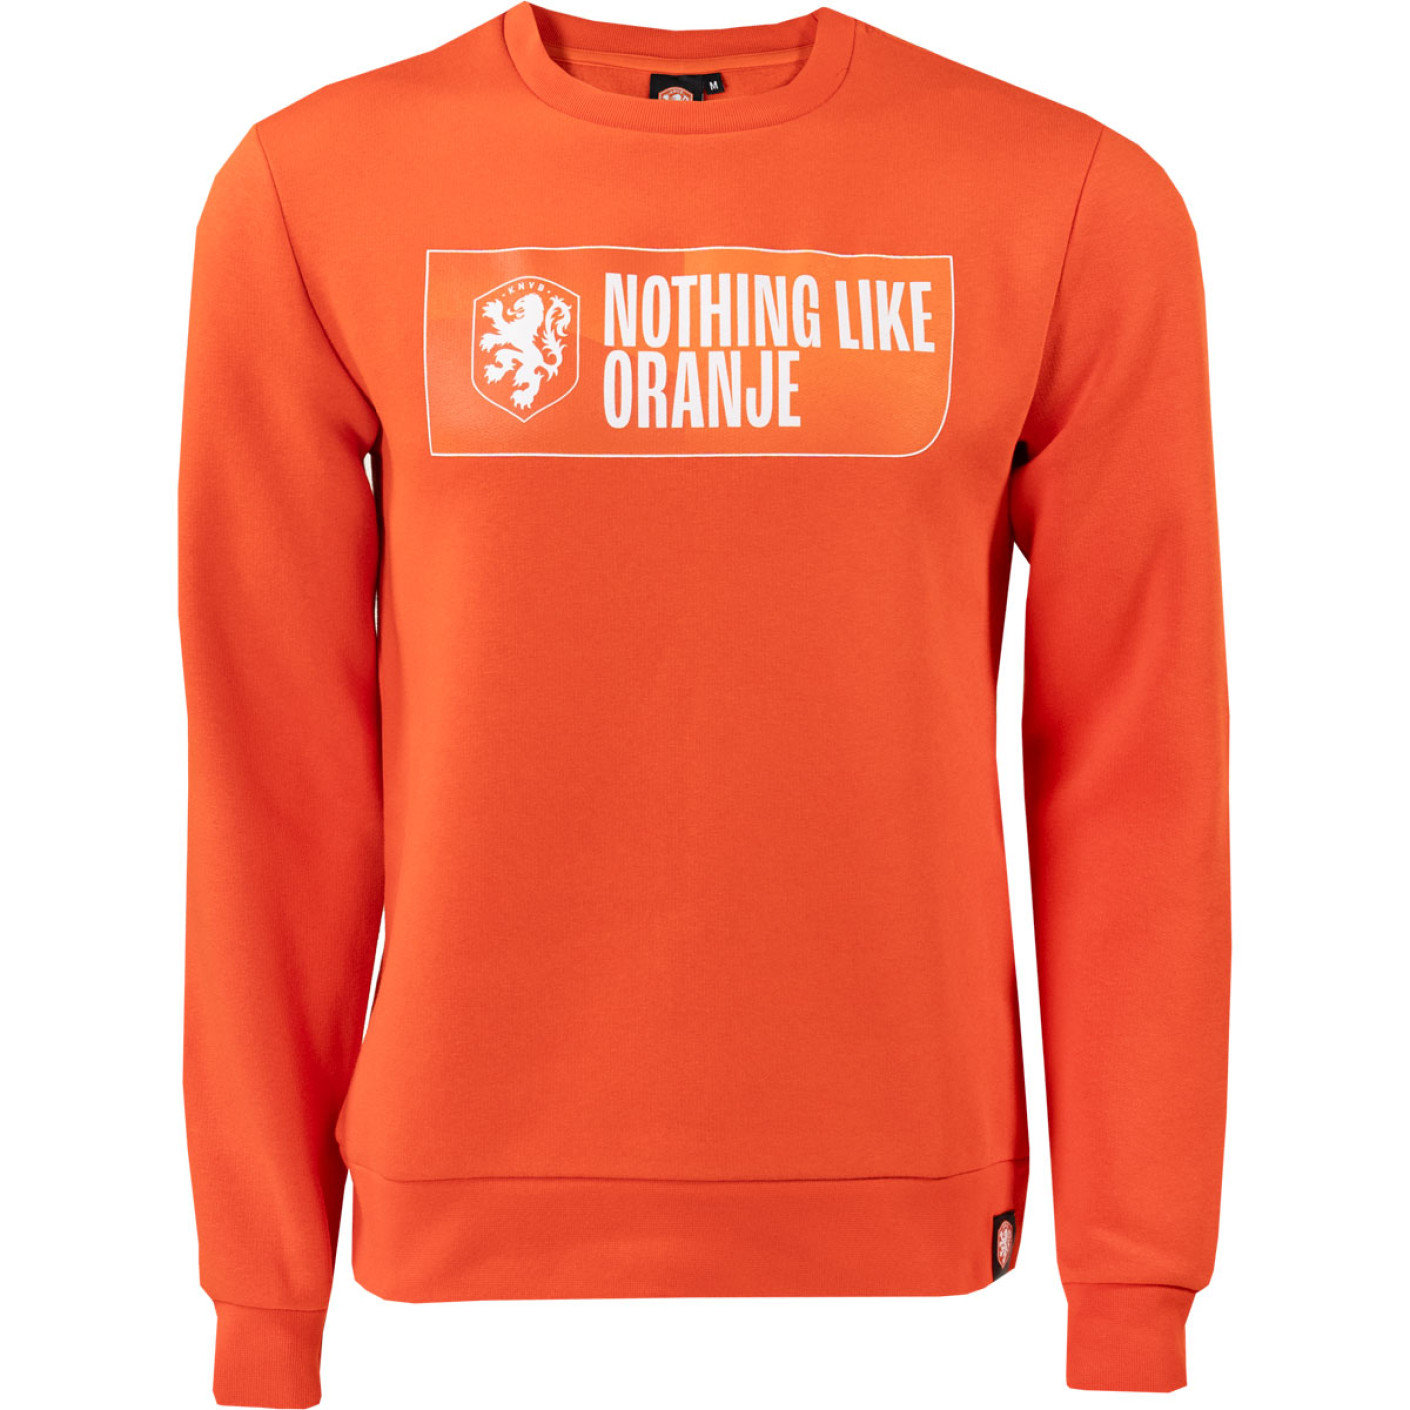 KNVB Crew Sweater Nothing Like Orange